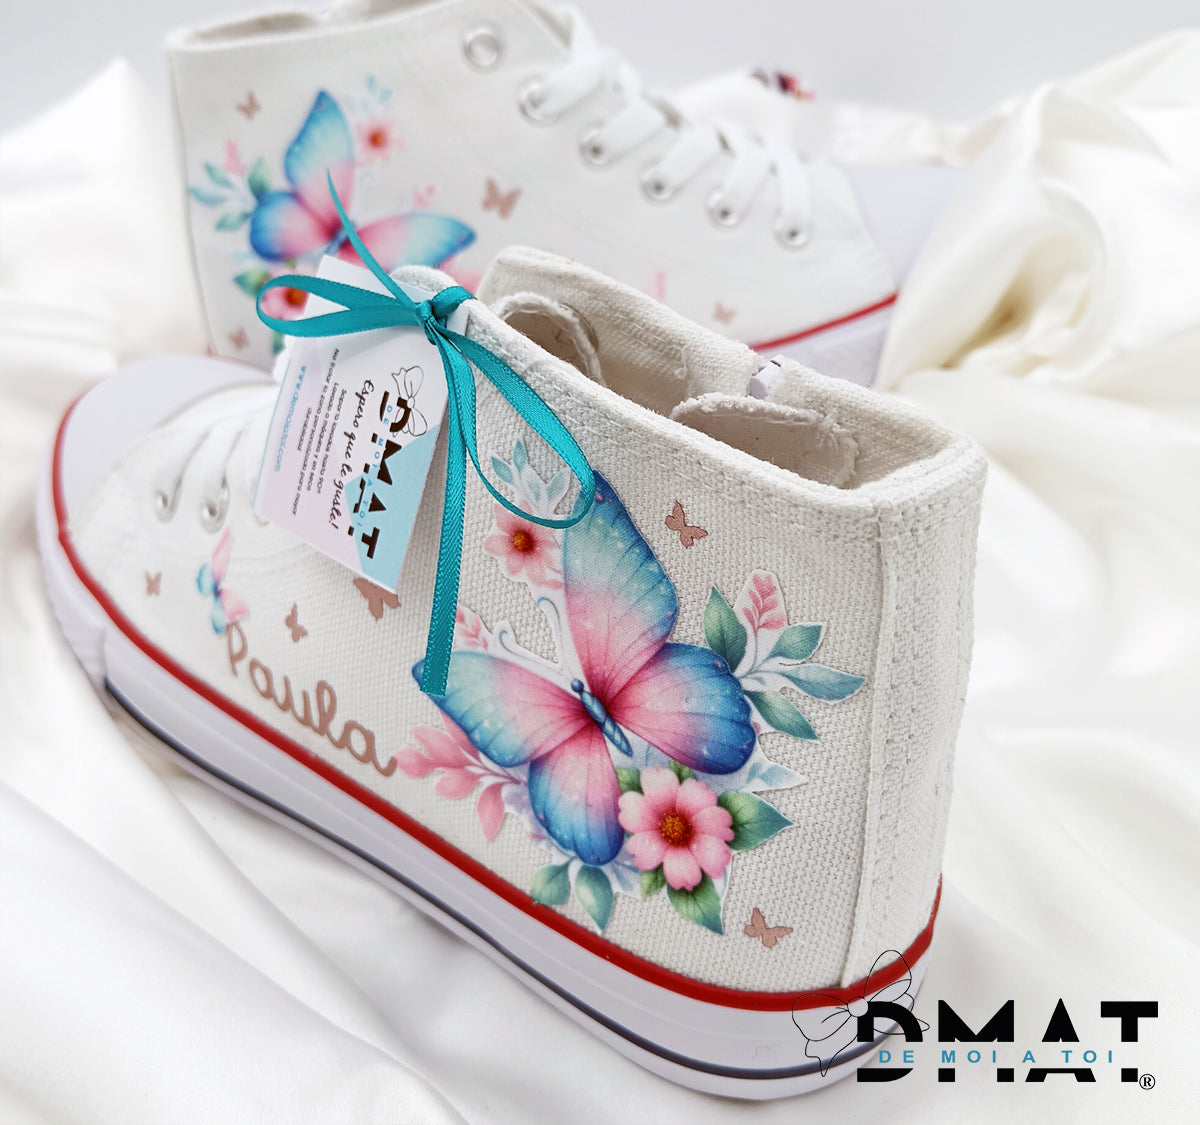 Zapatillas personalizadas con mariposas para comunión - demoi atoi